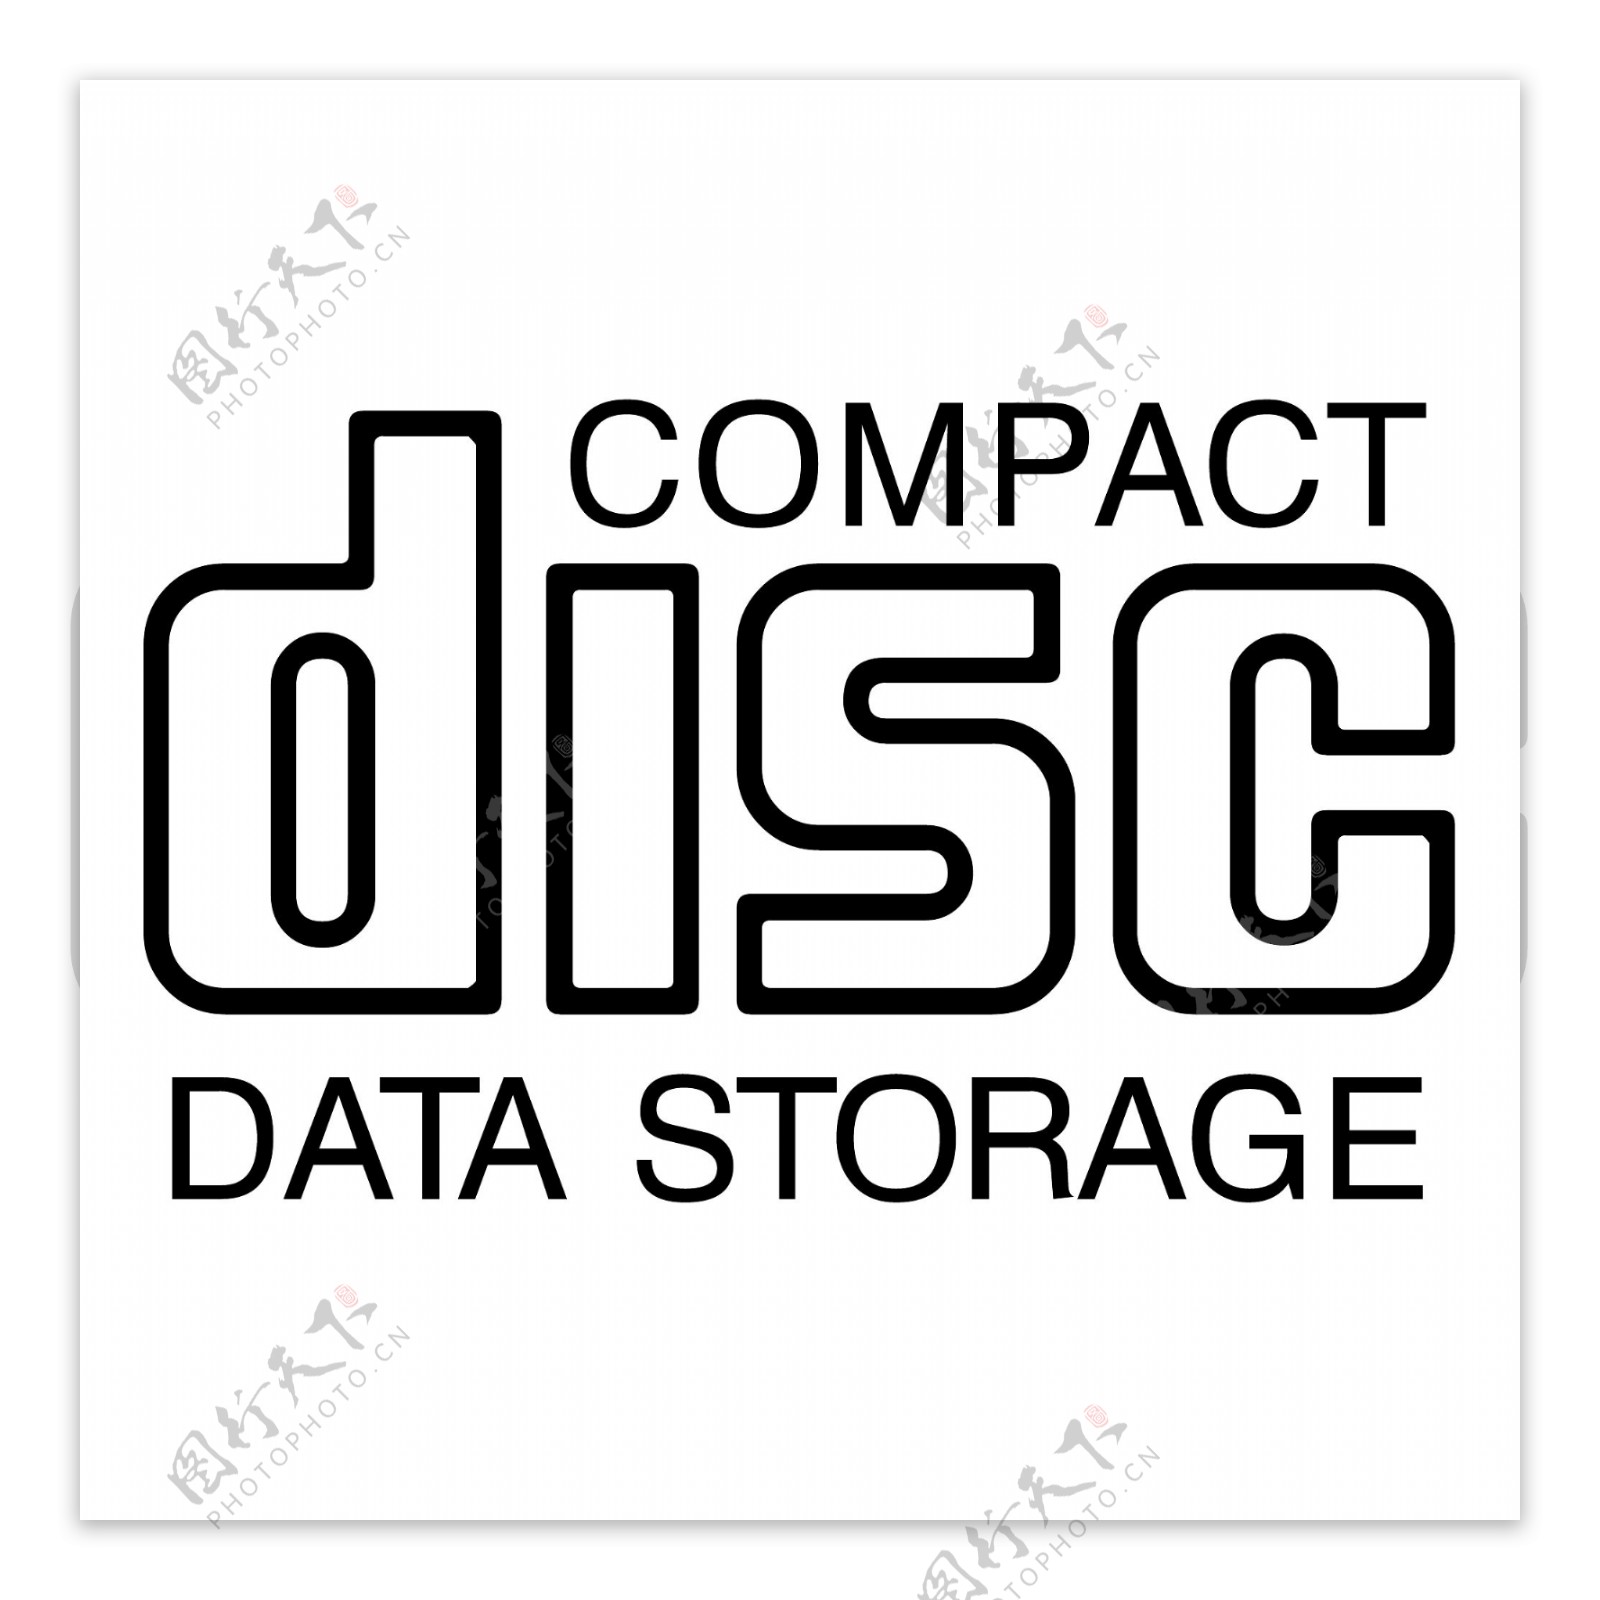 光盘数据存储